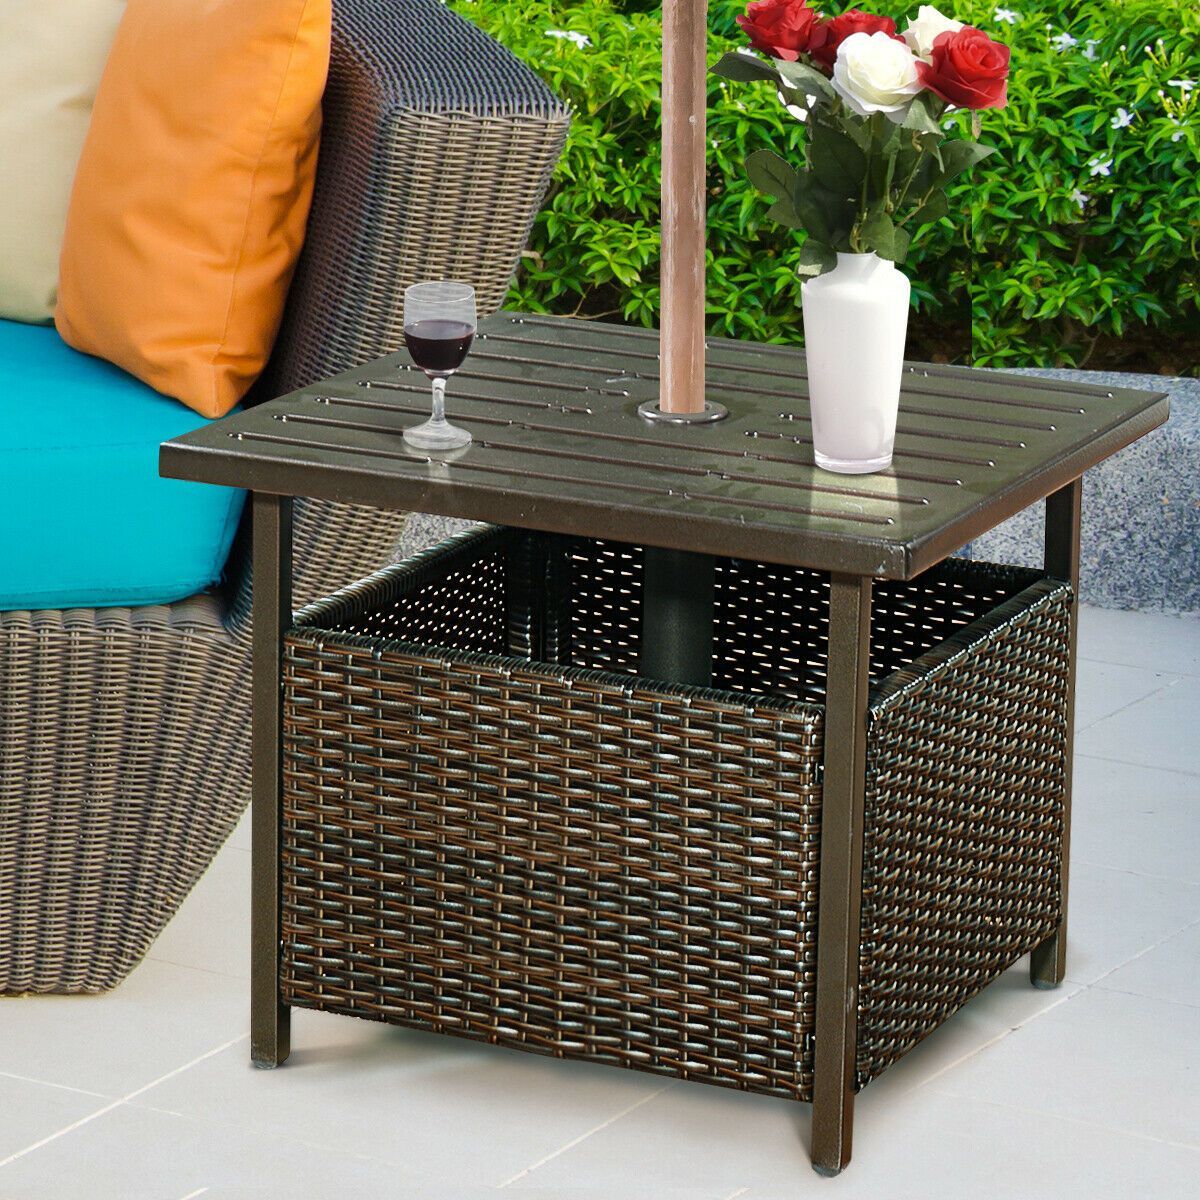 Costway Brown Rattan Wicker Steel Side Table Outdoor Furniture Deck Garden Patio Pool | Target